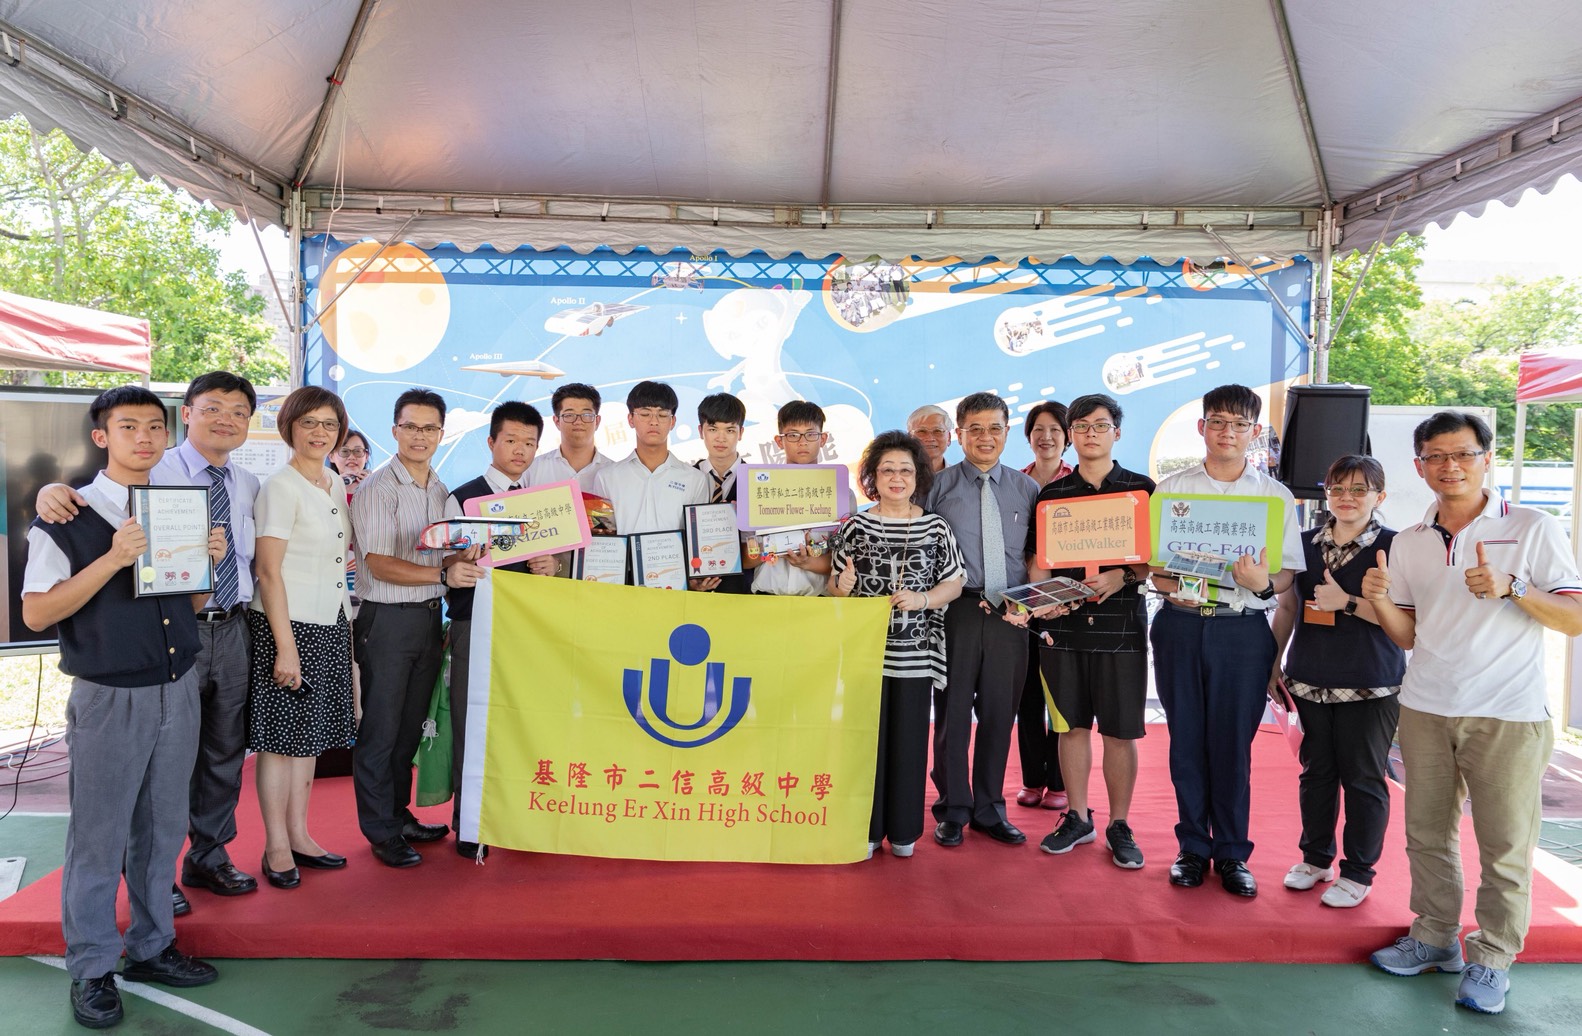 台灣高中職太陽能模型車十年耕耘有成　澳洲賽拼出台灣之光-太陽能教育